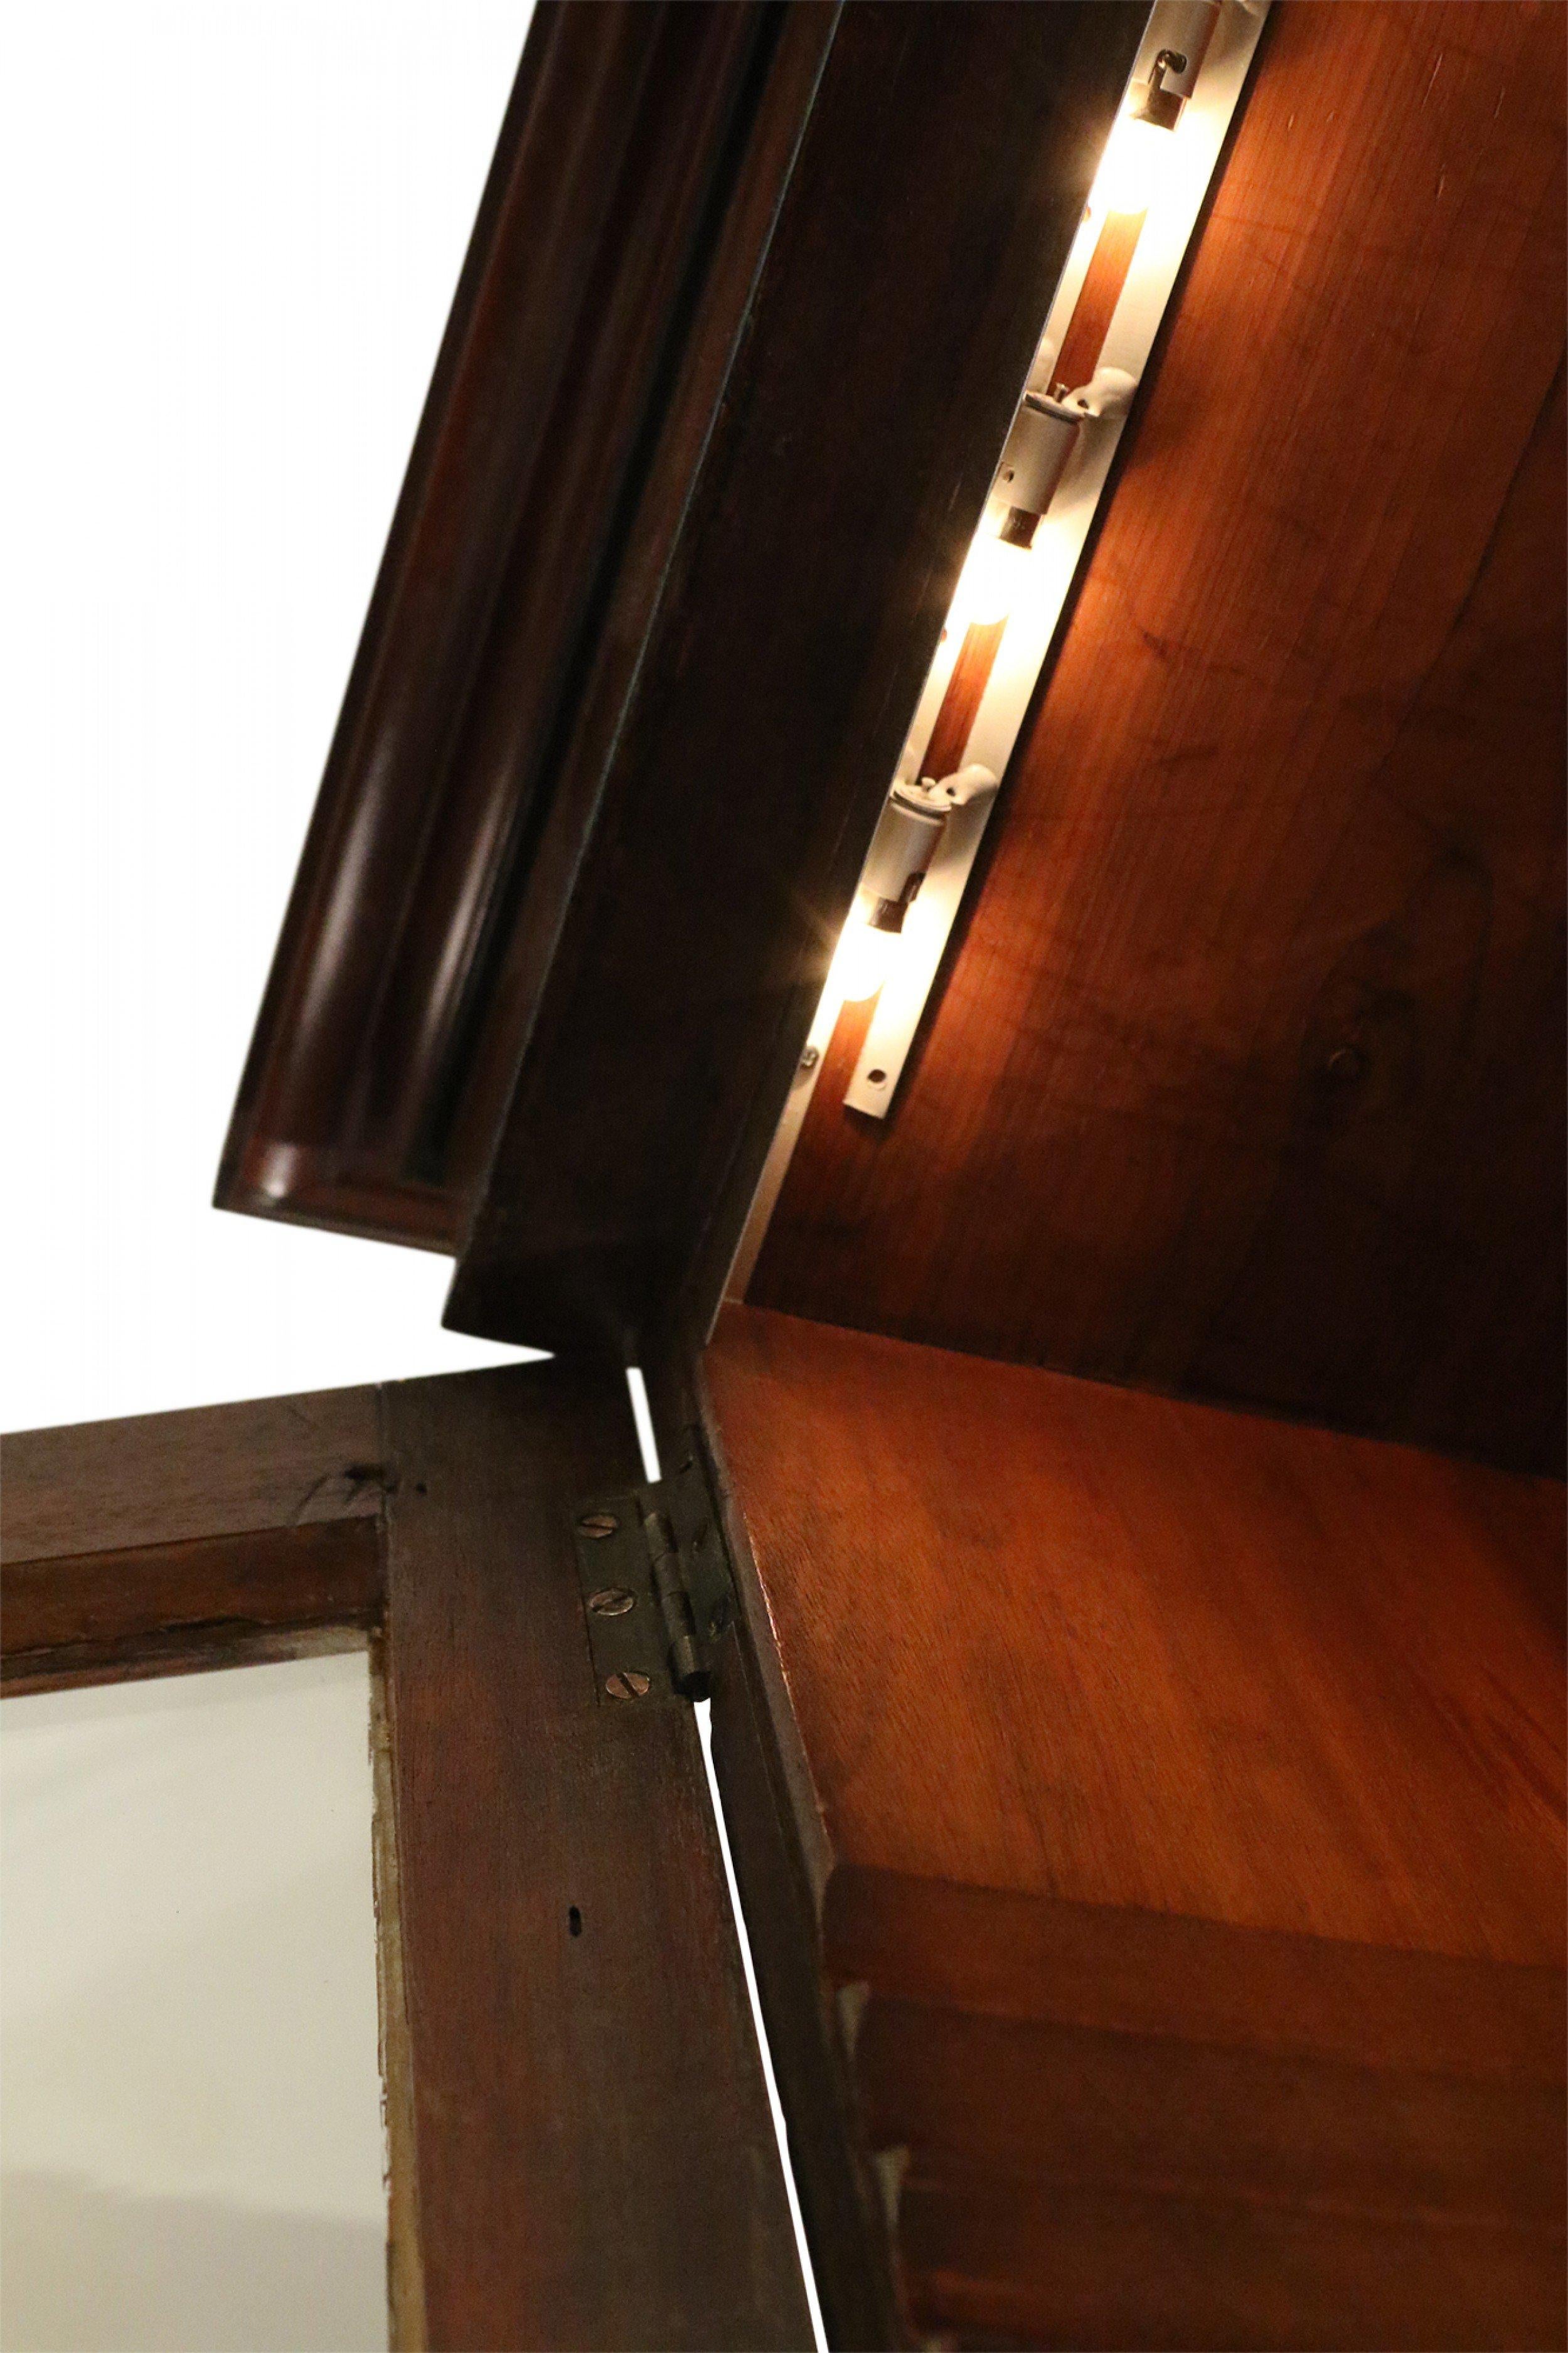 Englischer Regency-Mahagoni-Frontschrank mit vier unteren Schränken mit dekorativen Holzeinlagen und vier oberen vergitterten Glasvitrinen mit Unterbodenbeleuchtung.
 